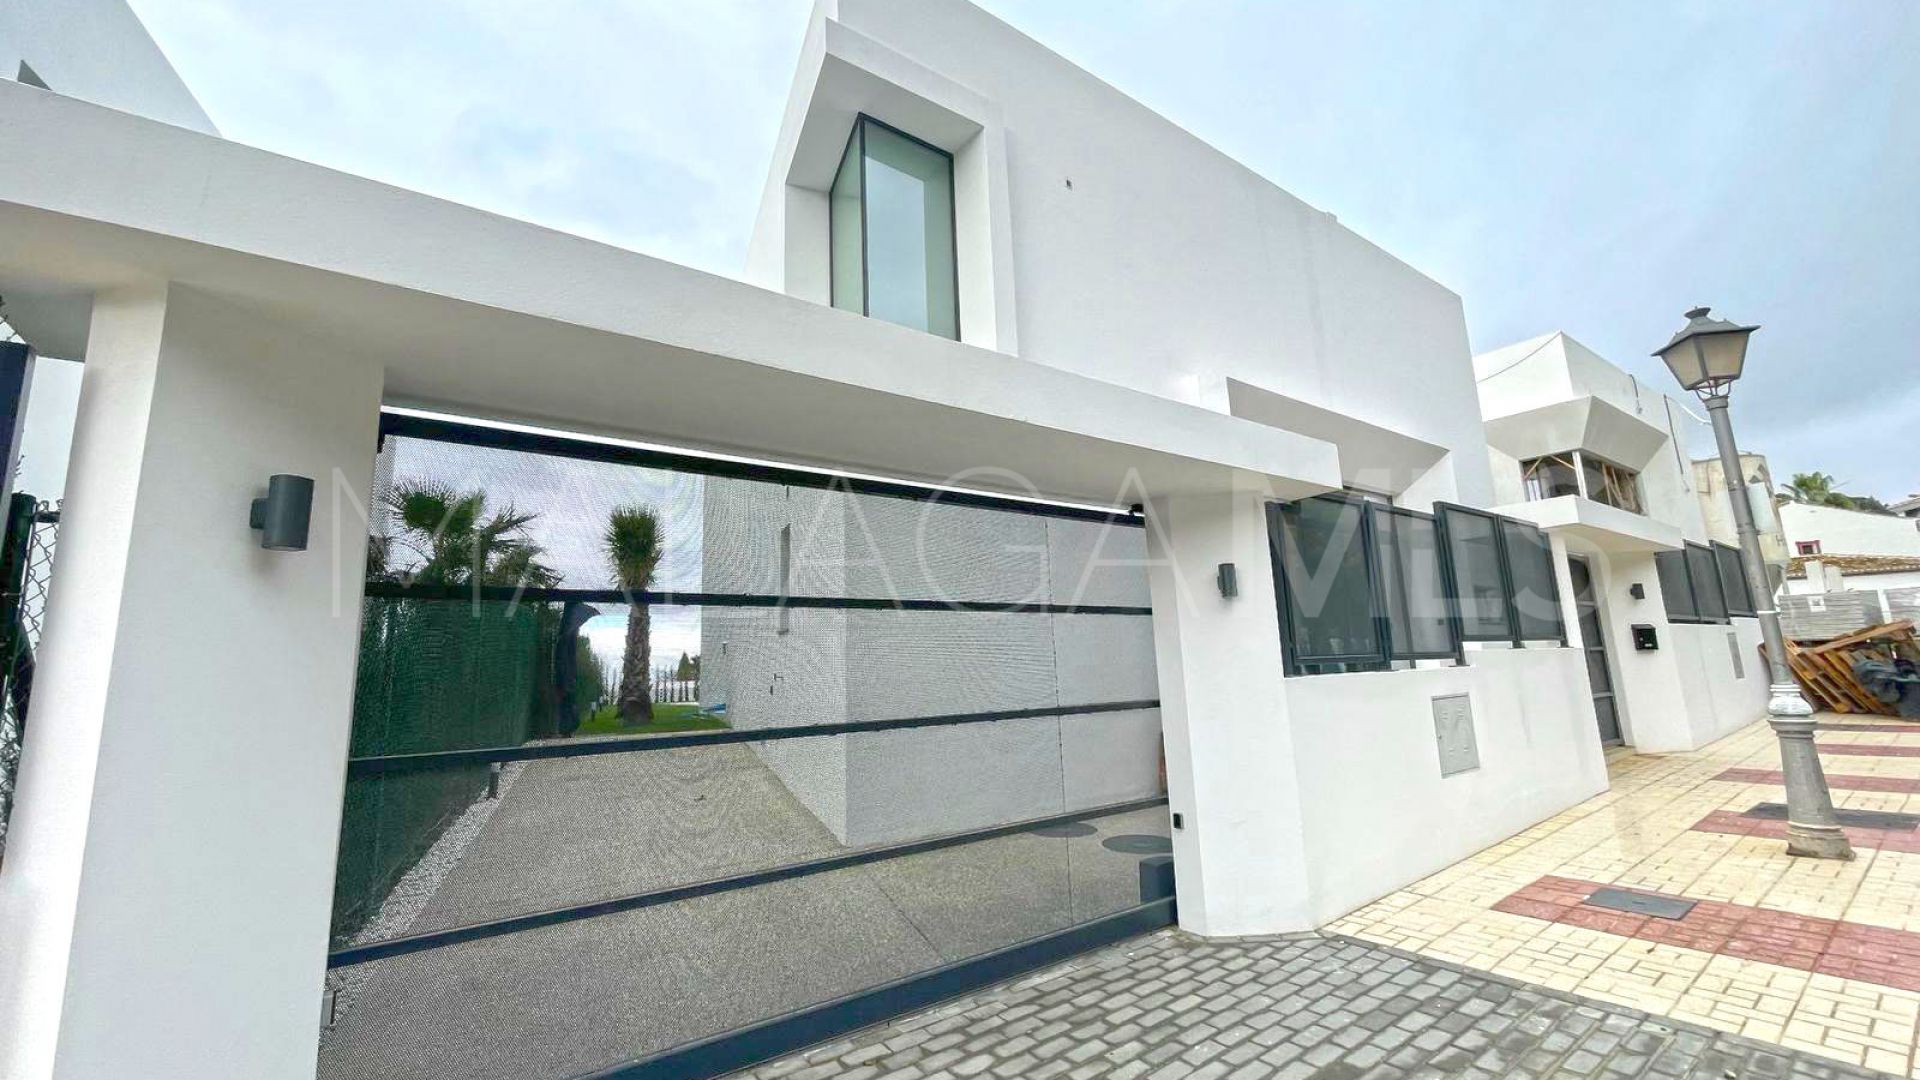 Villa for sale with 5 bedrooms in La Reserva de Marbella